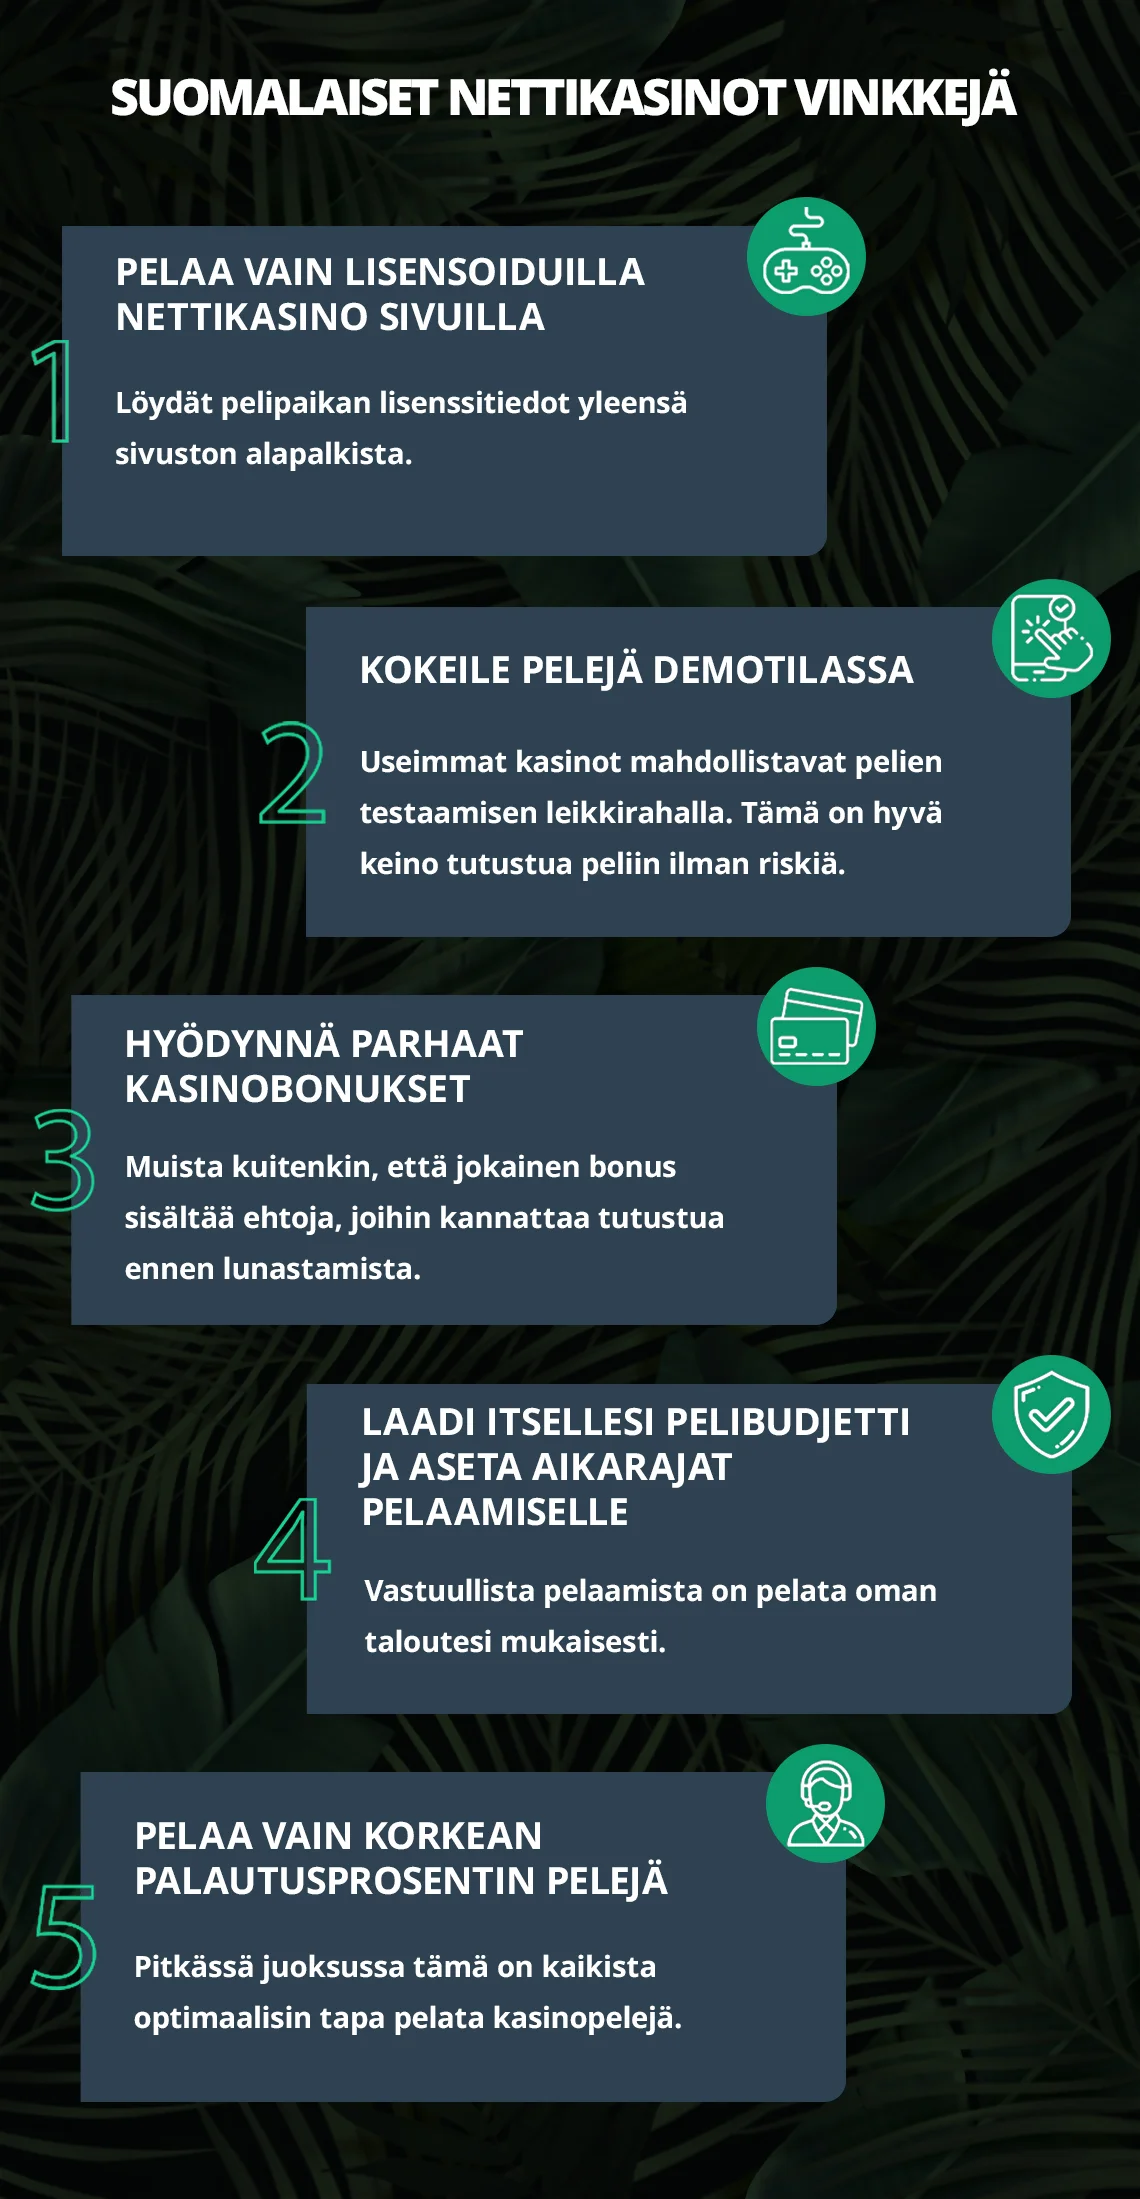 Suomalaiset nettikasinot vinkkejä